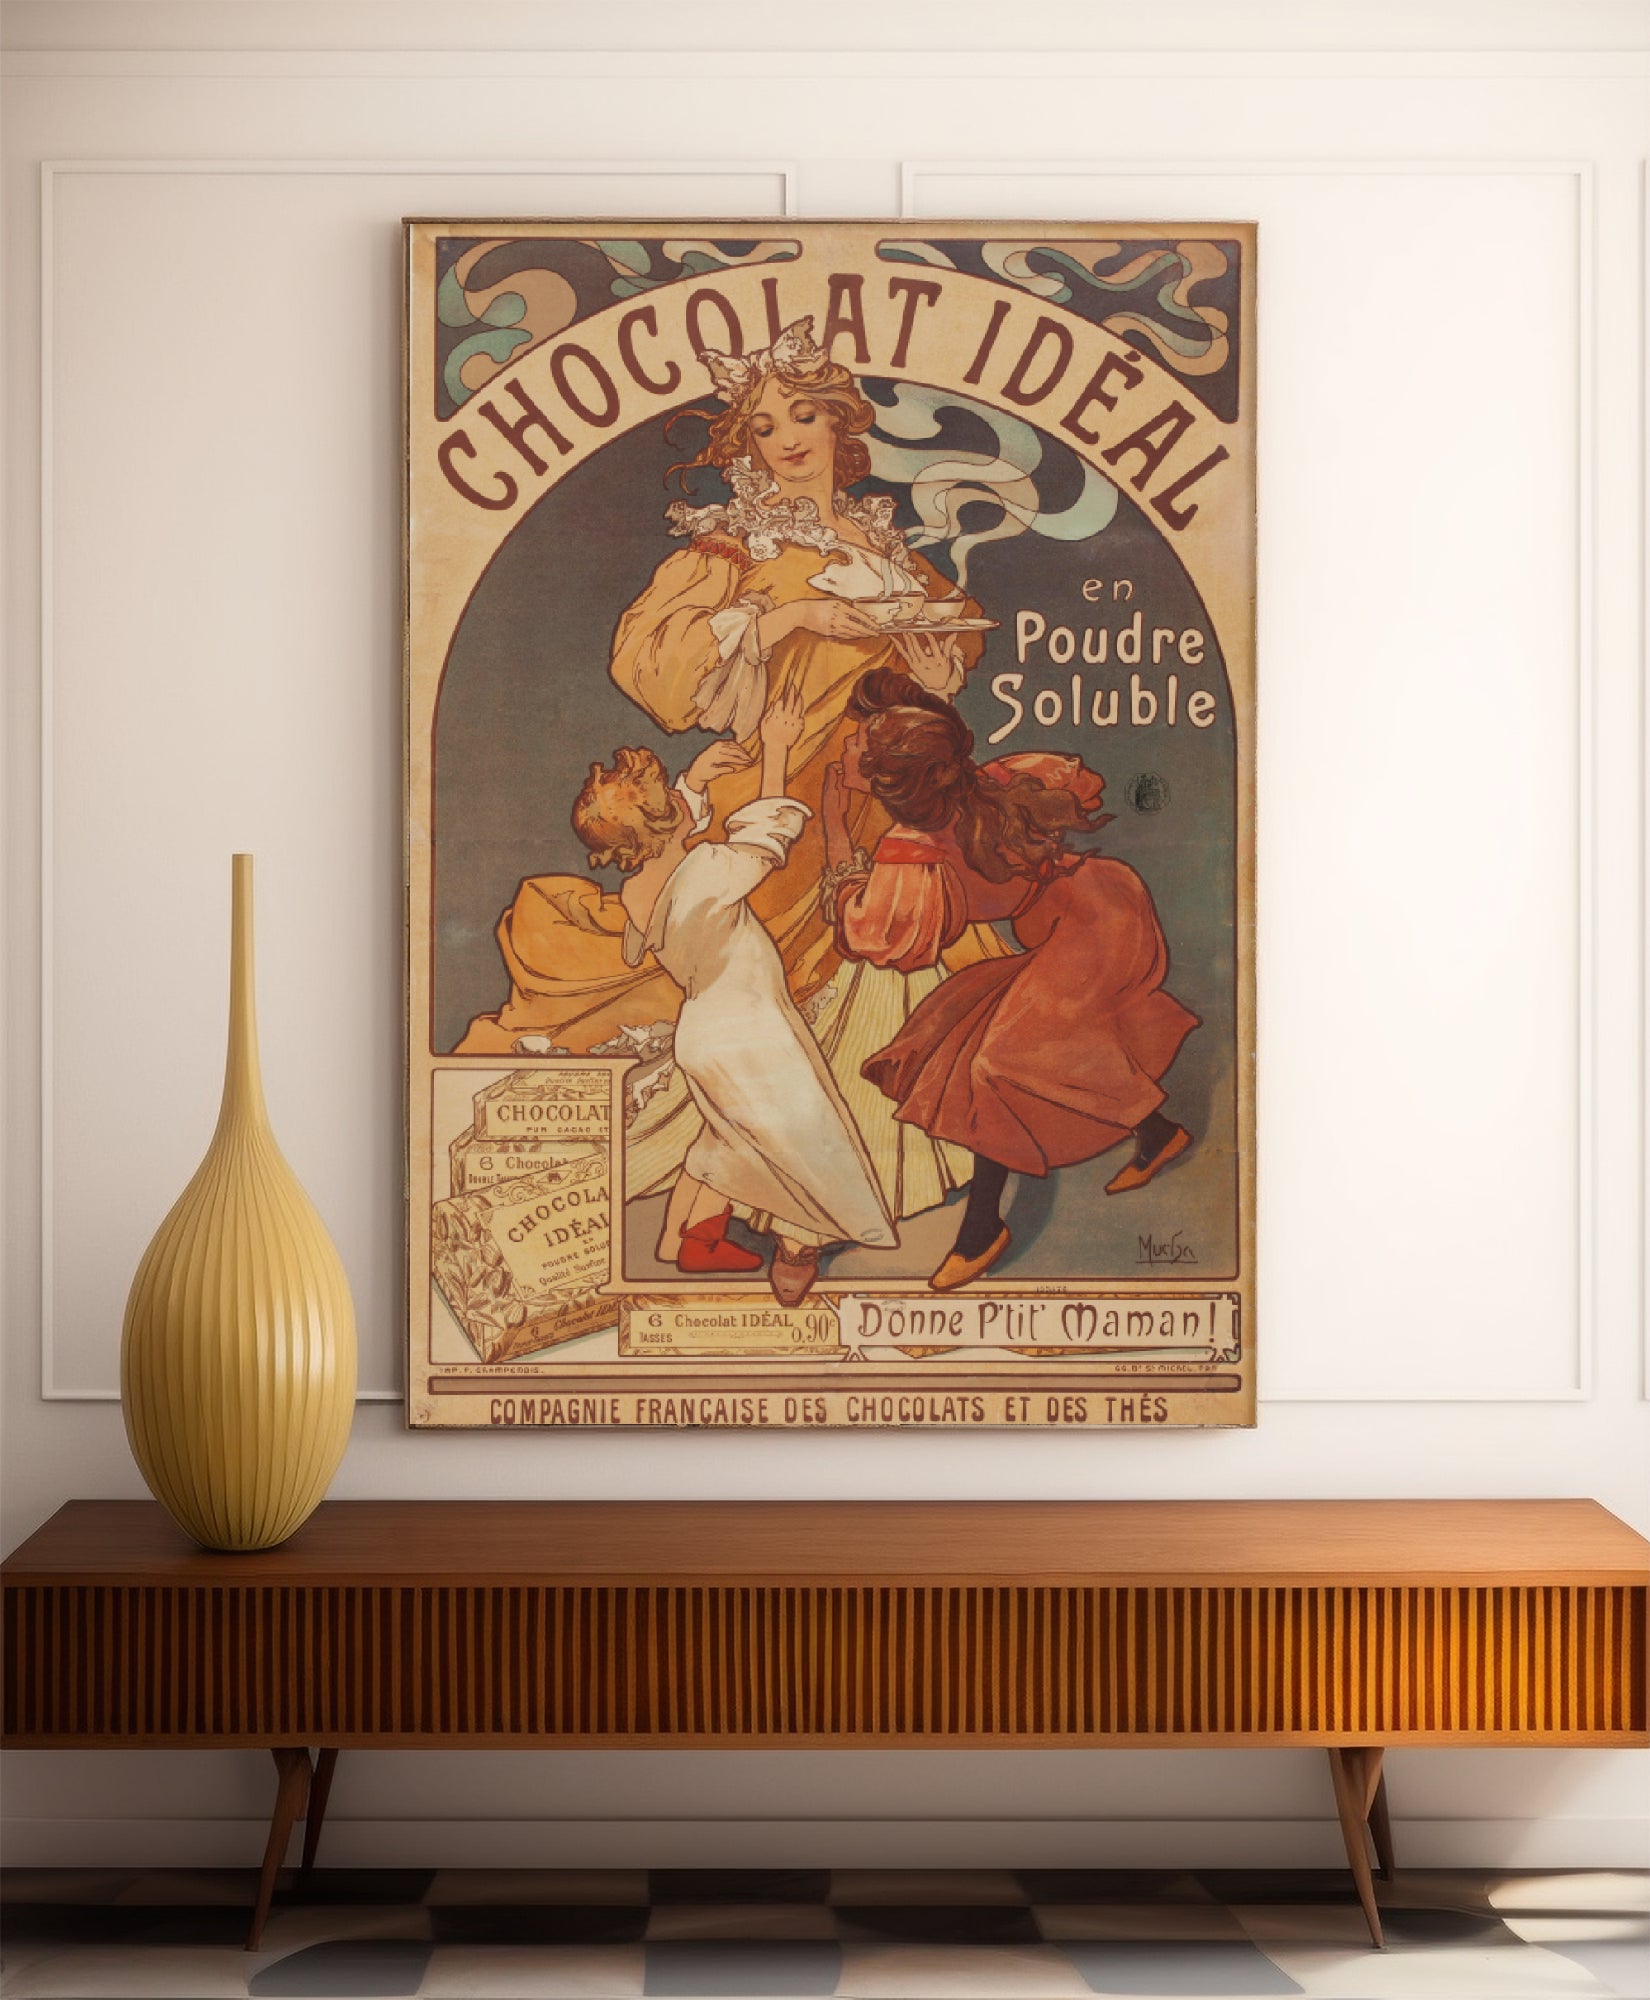 Affiche Alphonse Mucha "Chocolat Idéal" vintage - Art Nouveau - Haute Définition - papier mat 230gr/m2